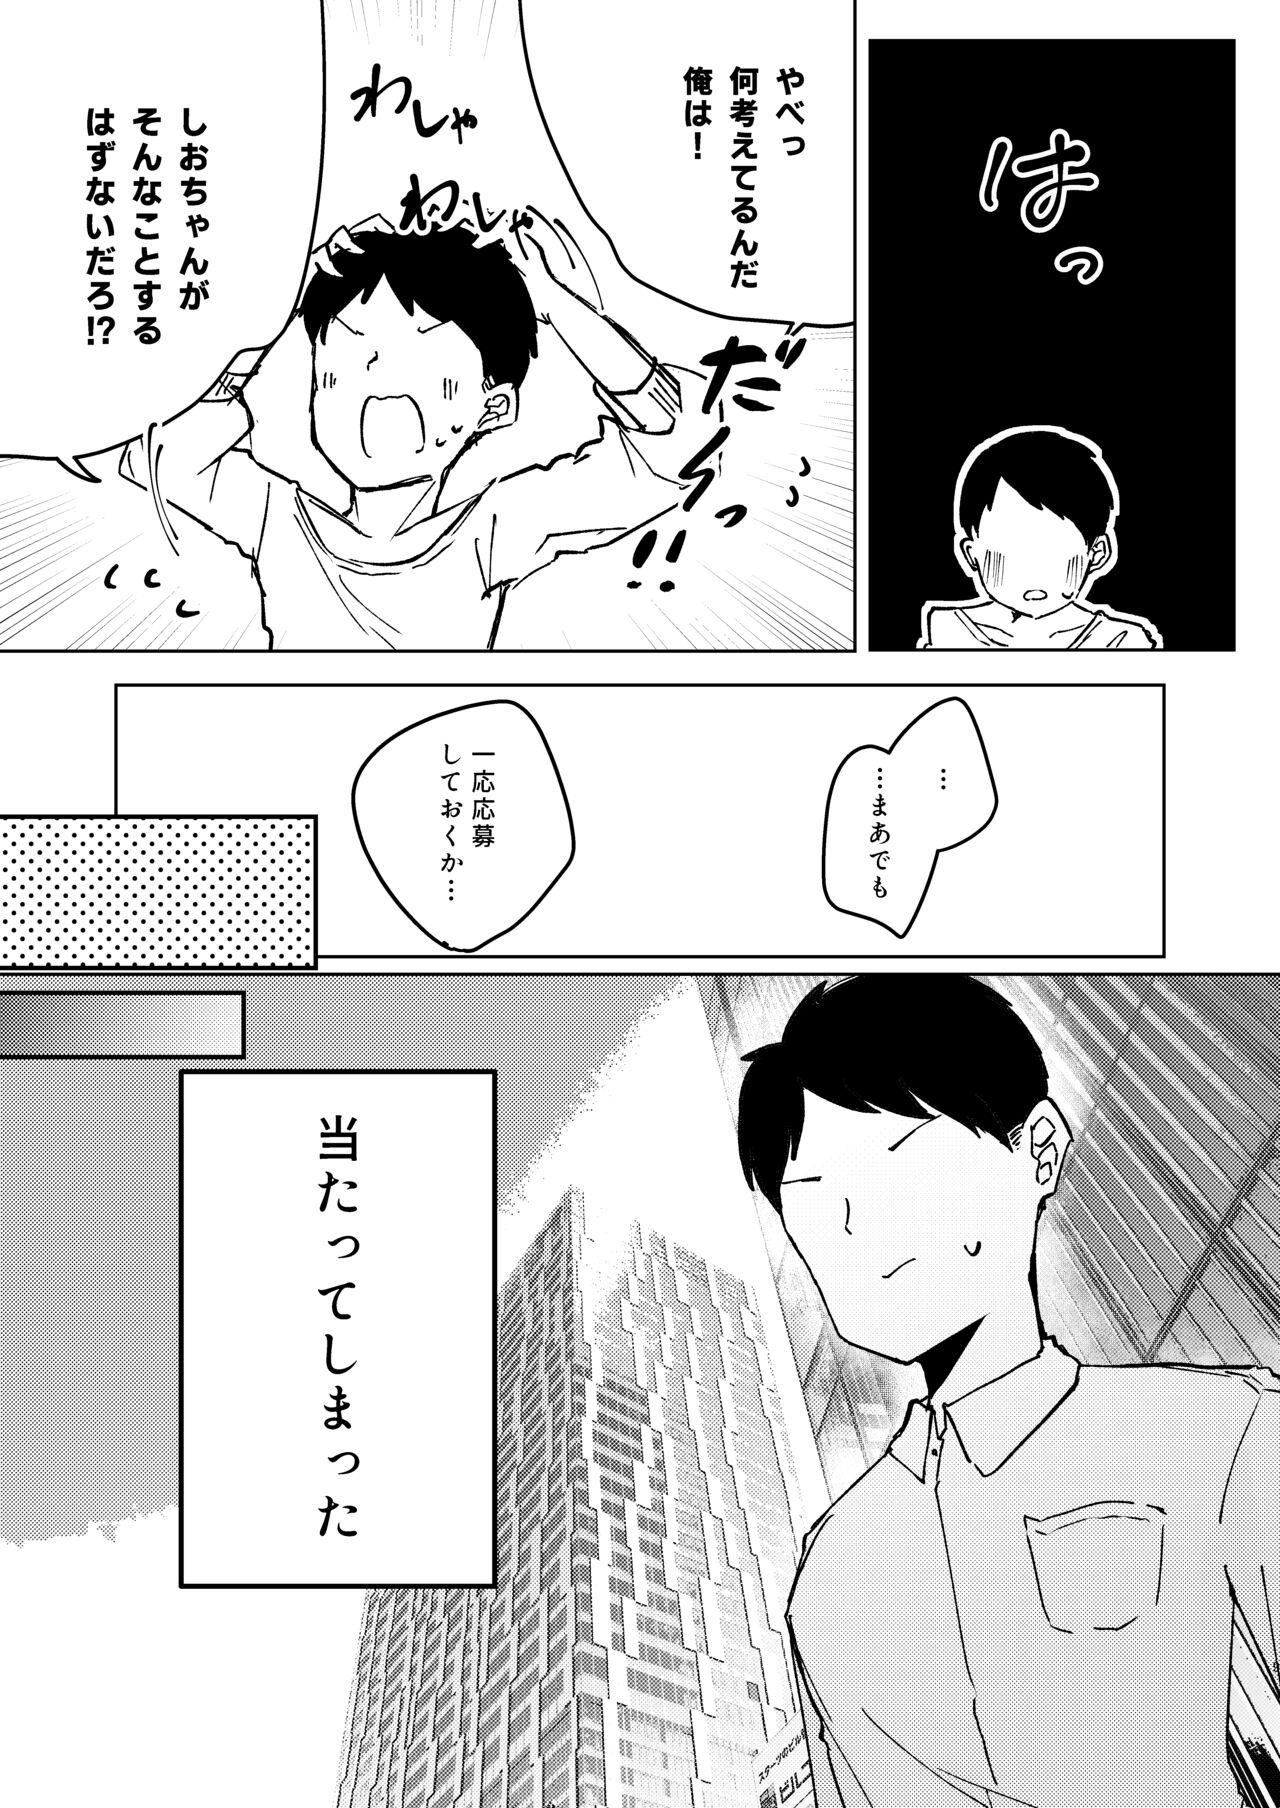 Piss ASMR Rokuon-chuu. - Original Hot Mom - Page 9